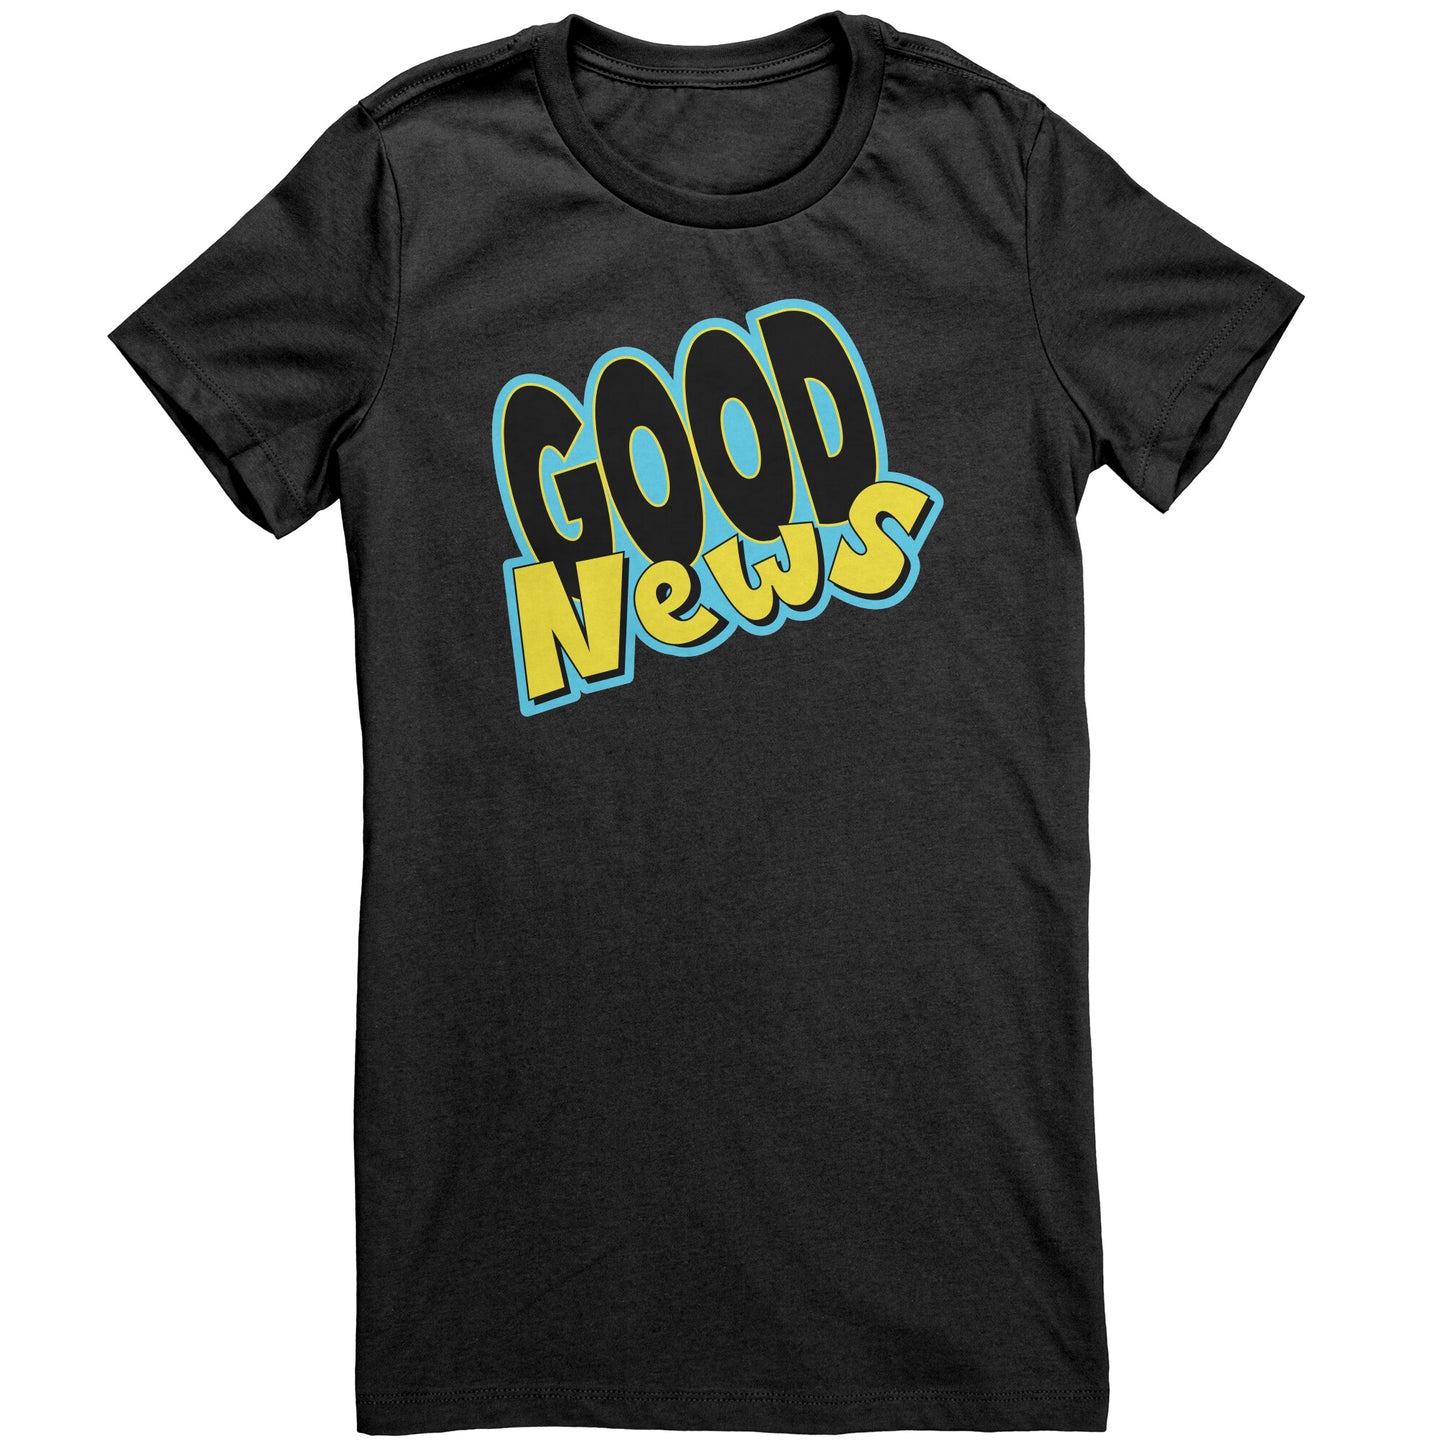 Good News t-shirt